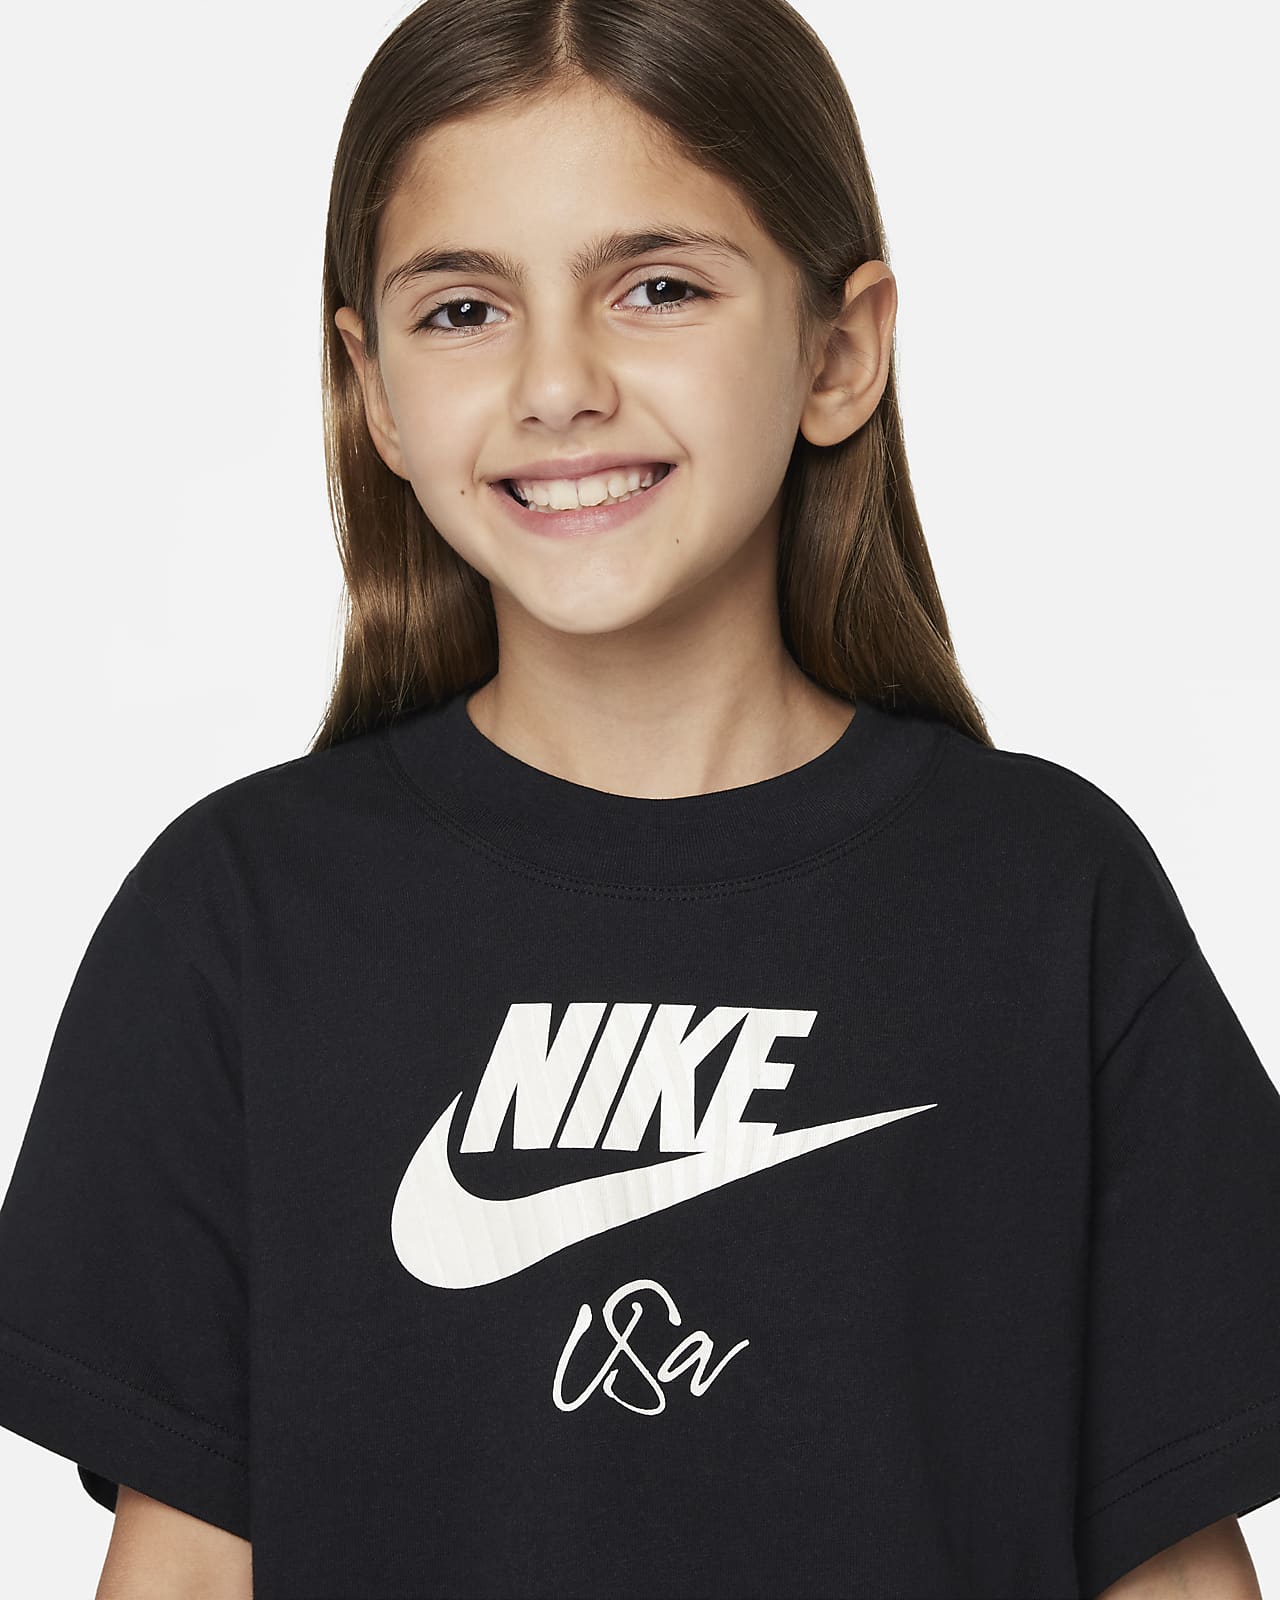 Niños Playeras. Nike US